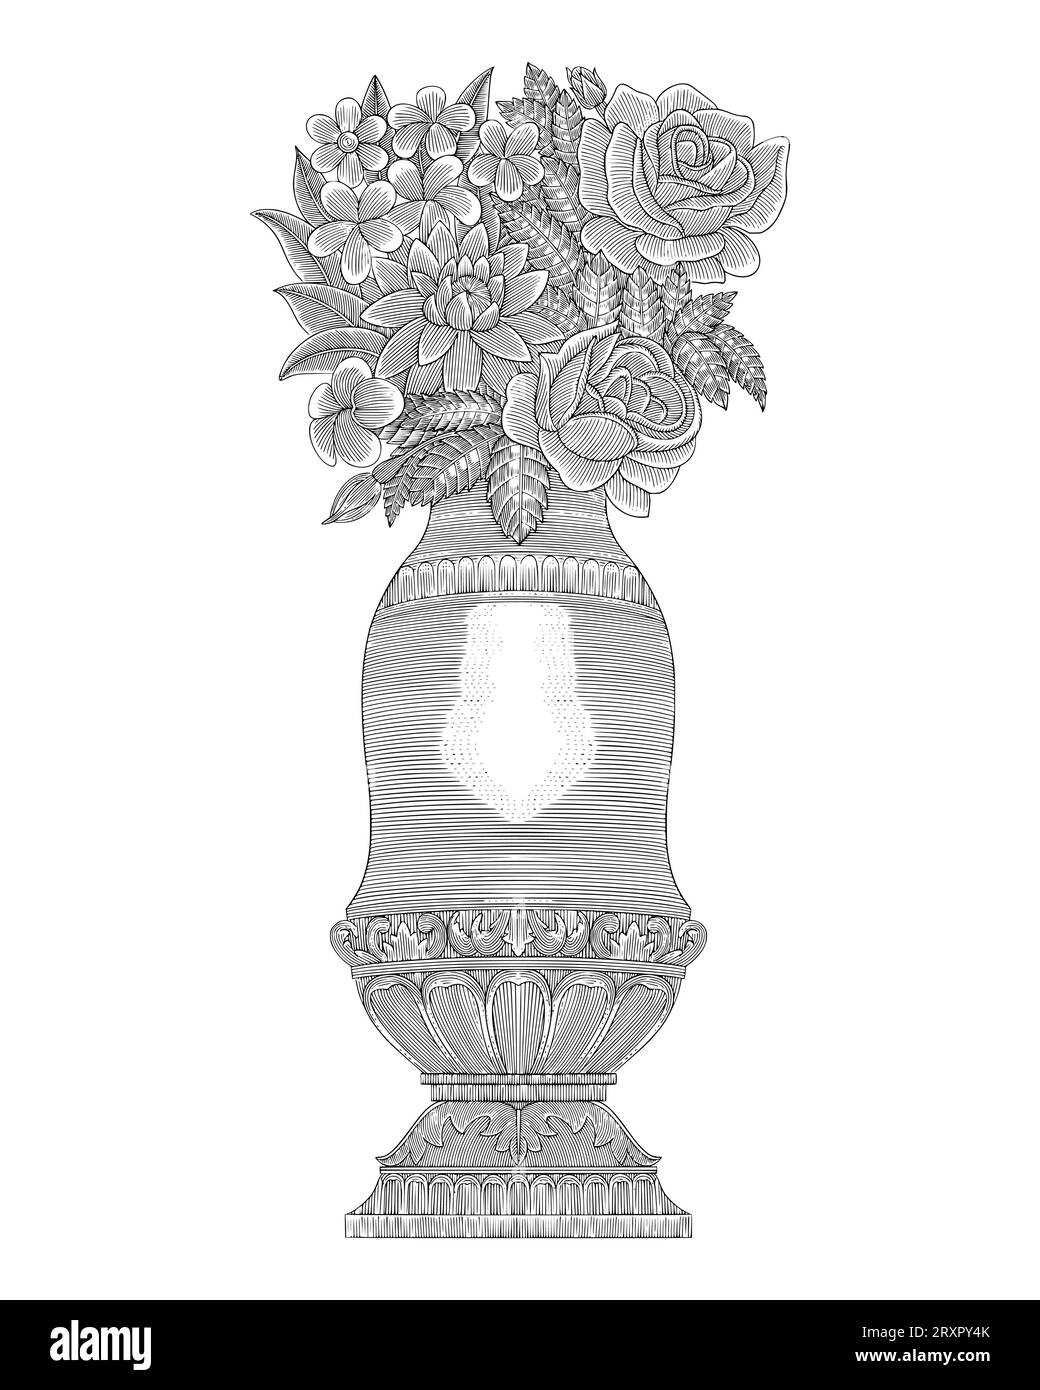 roses et fleurs de frangipanier avec ornement antique vase médiéval, dessin à la main style gravure vintage Illustration de Vecteur